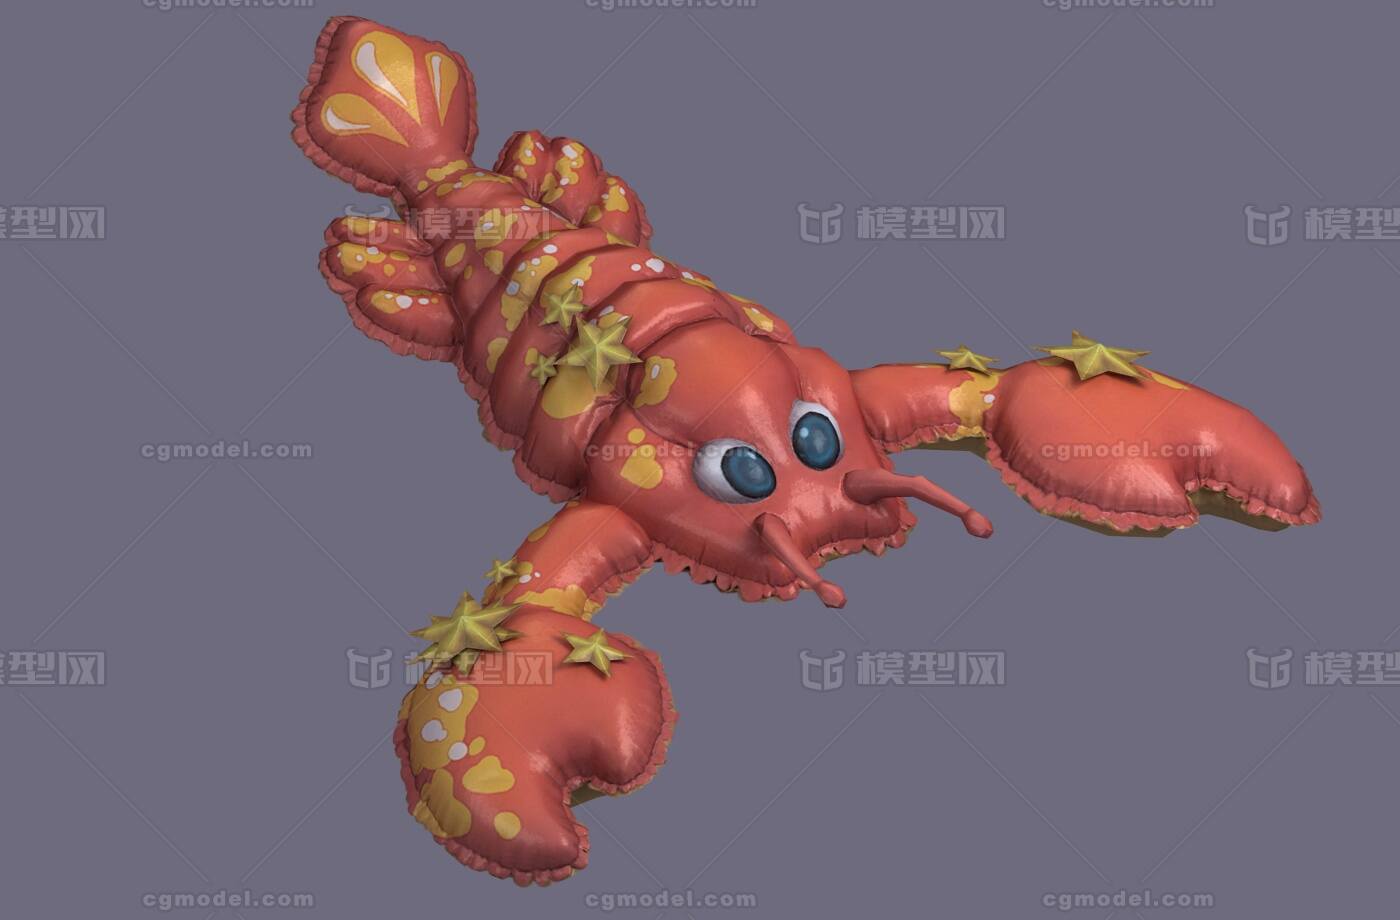 新款仿真龙虾海洋动物毛绒玩具创意澳龙抱枕抓机娃娃玩偶地摊货源-阿里巴巴